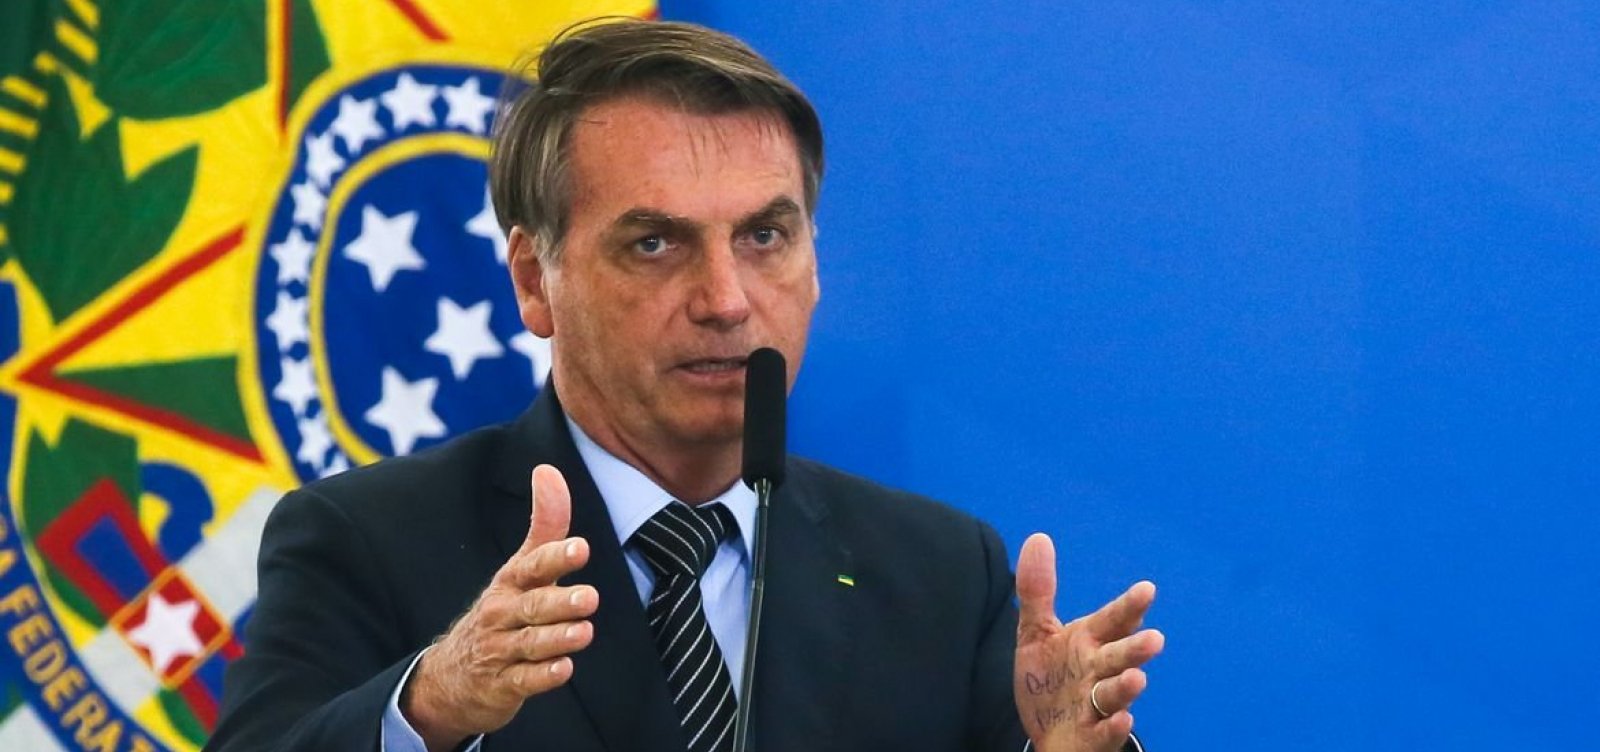 Bolsonaro admite haver "casos isolados", mas não "corrupção endêmica" no governo